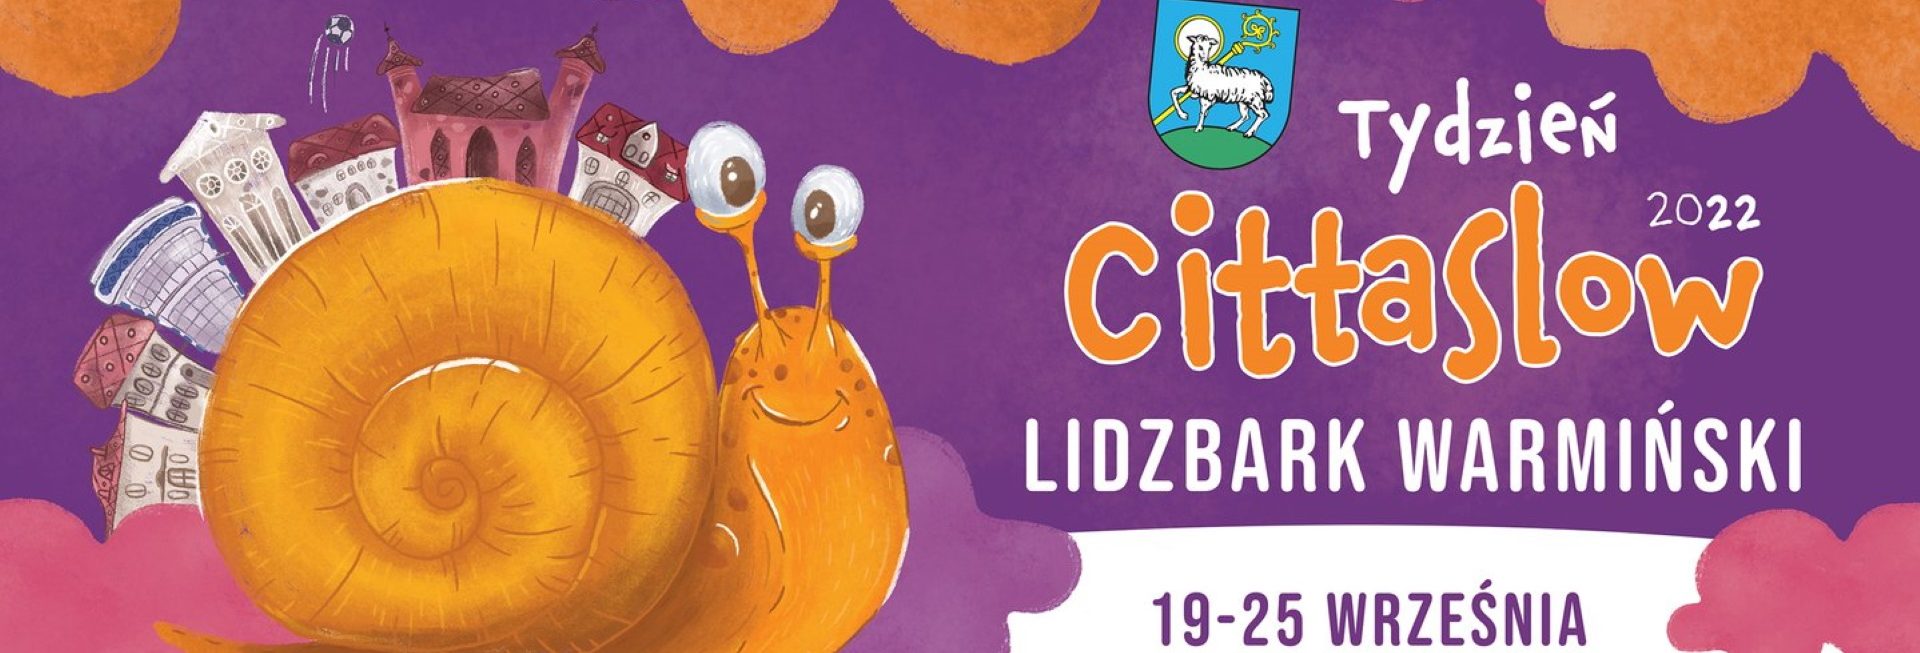 Plakat zapraszający do Lidzbarka Warmińskiego na Tydzień Cittaslow Lidzbark Warmiński 2022.